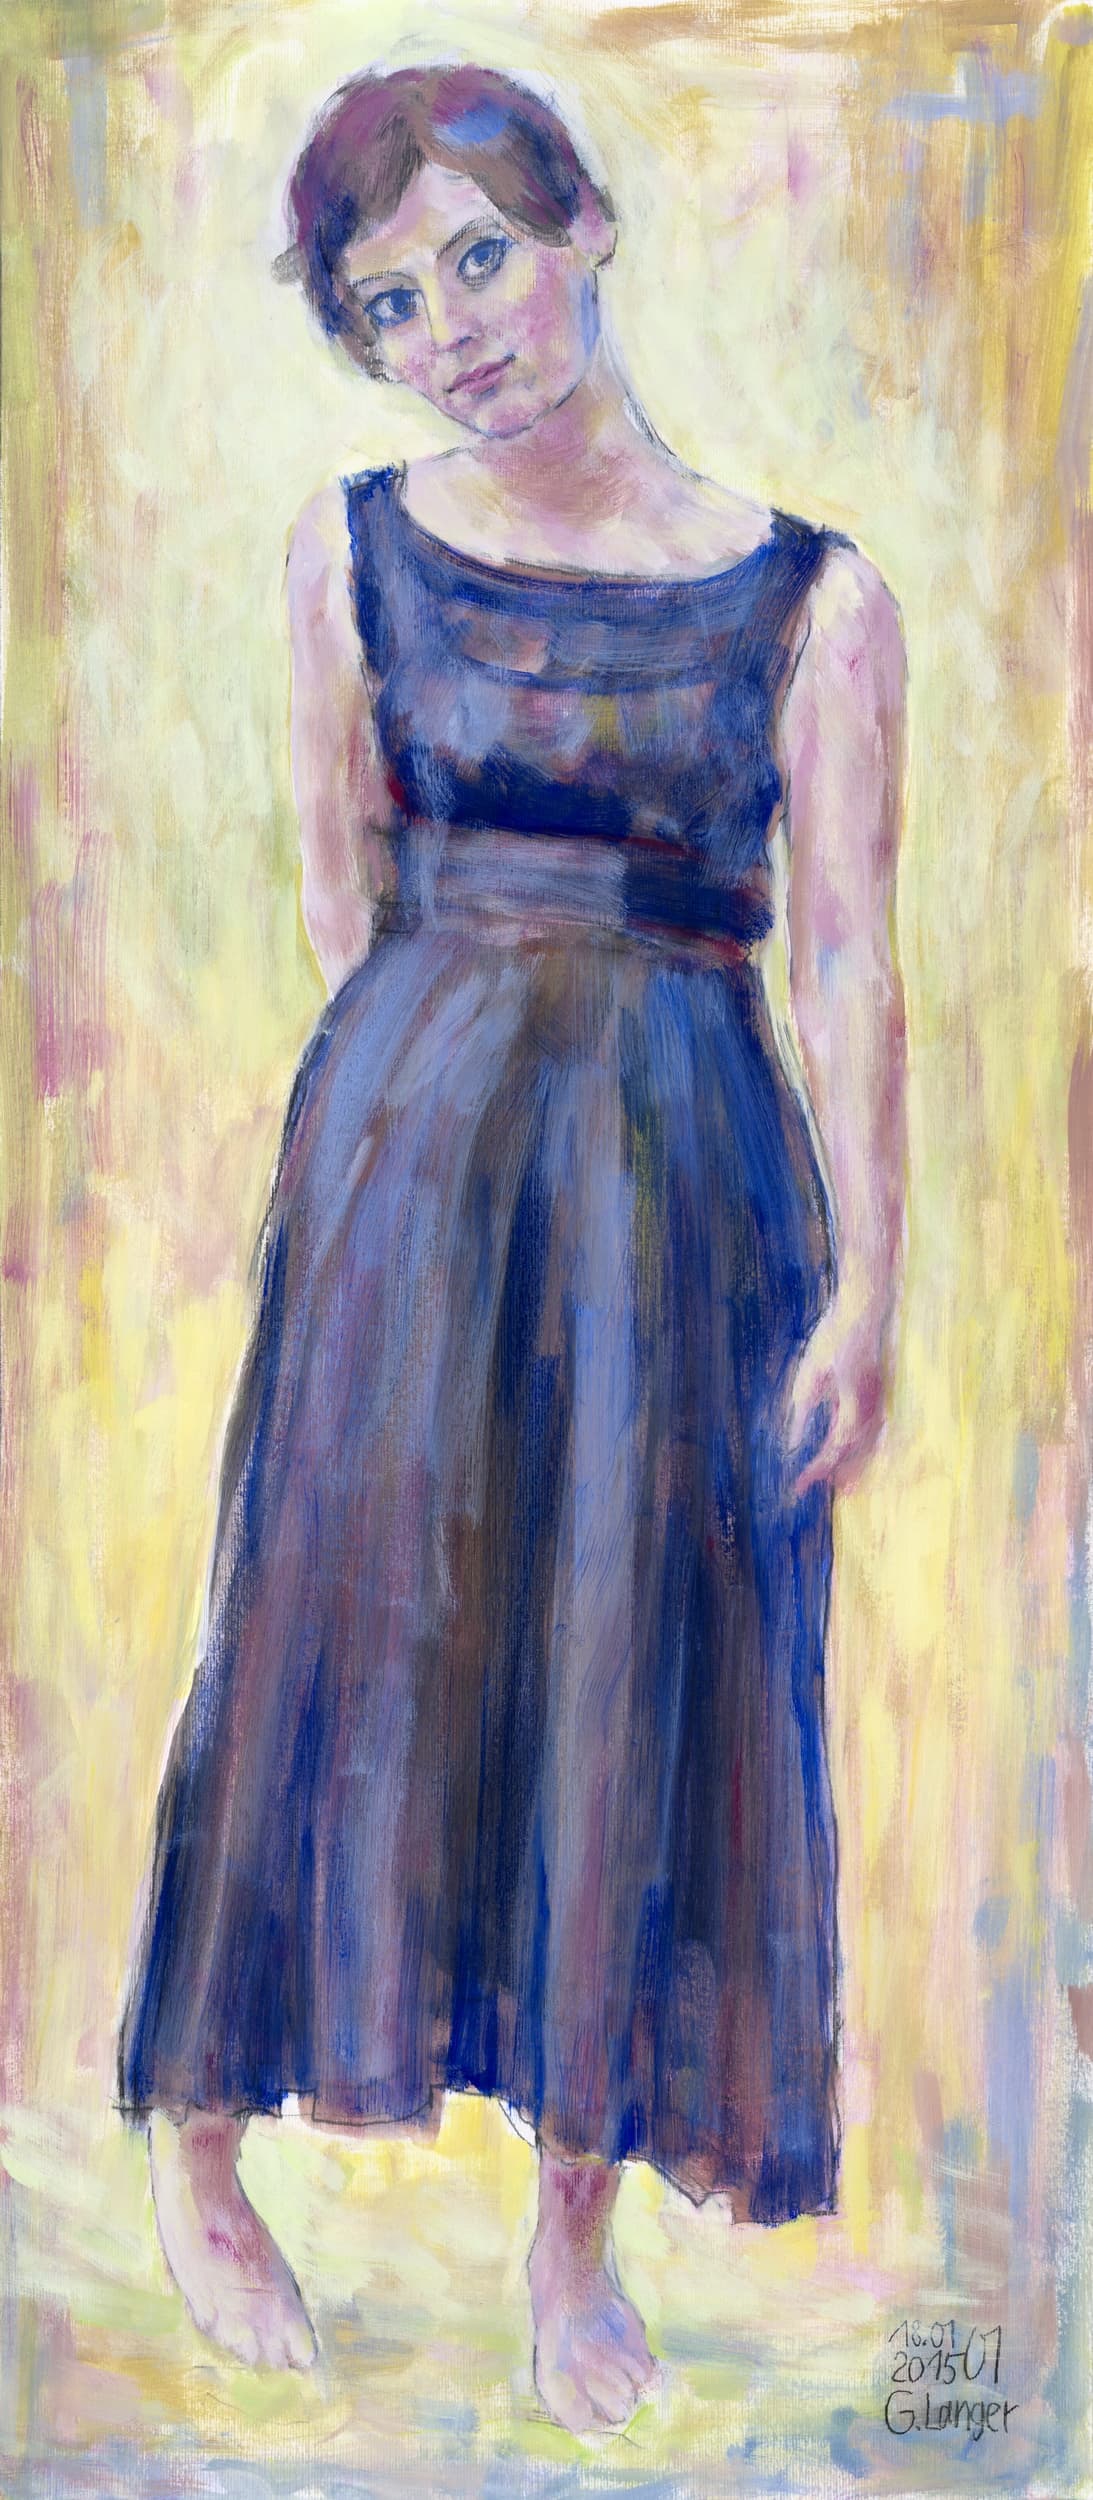 Gunter Langer, stehende Frau im schwarzen Kleid, Scheues Mädchen, 2015, Tempera, Karton, 100 x 44 cm